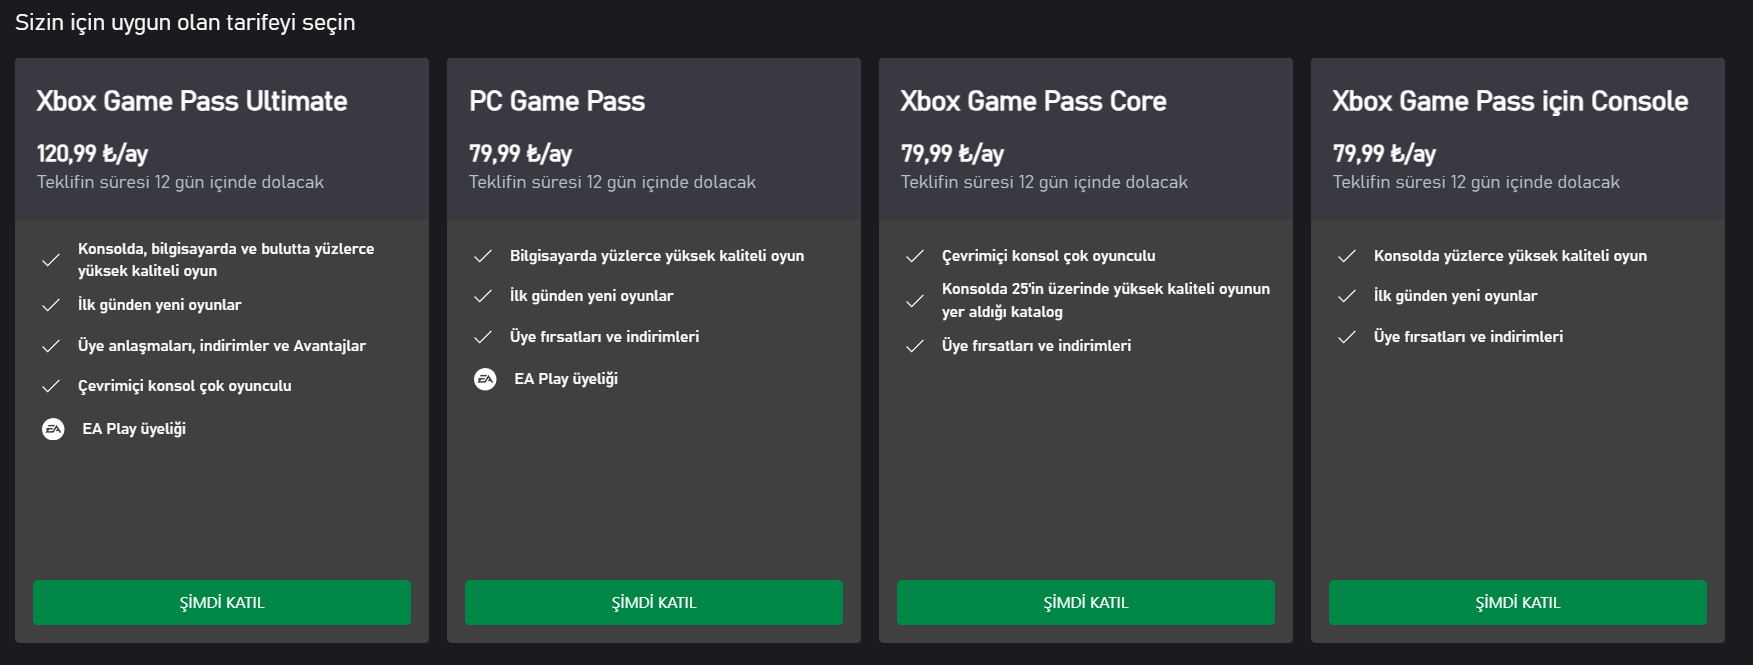 Meral Erden: Xbox Game Pass Fiyatlarına Yakında Tekrar Zam Gelebilir! 1